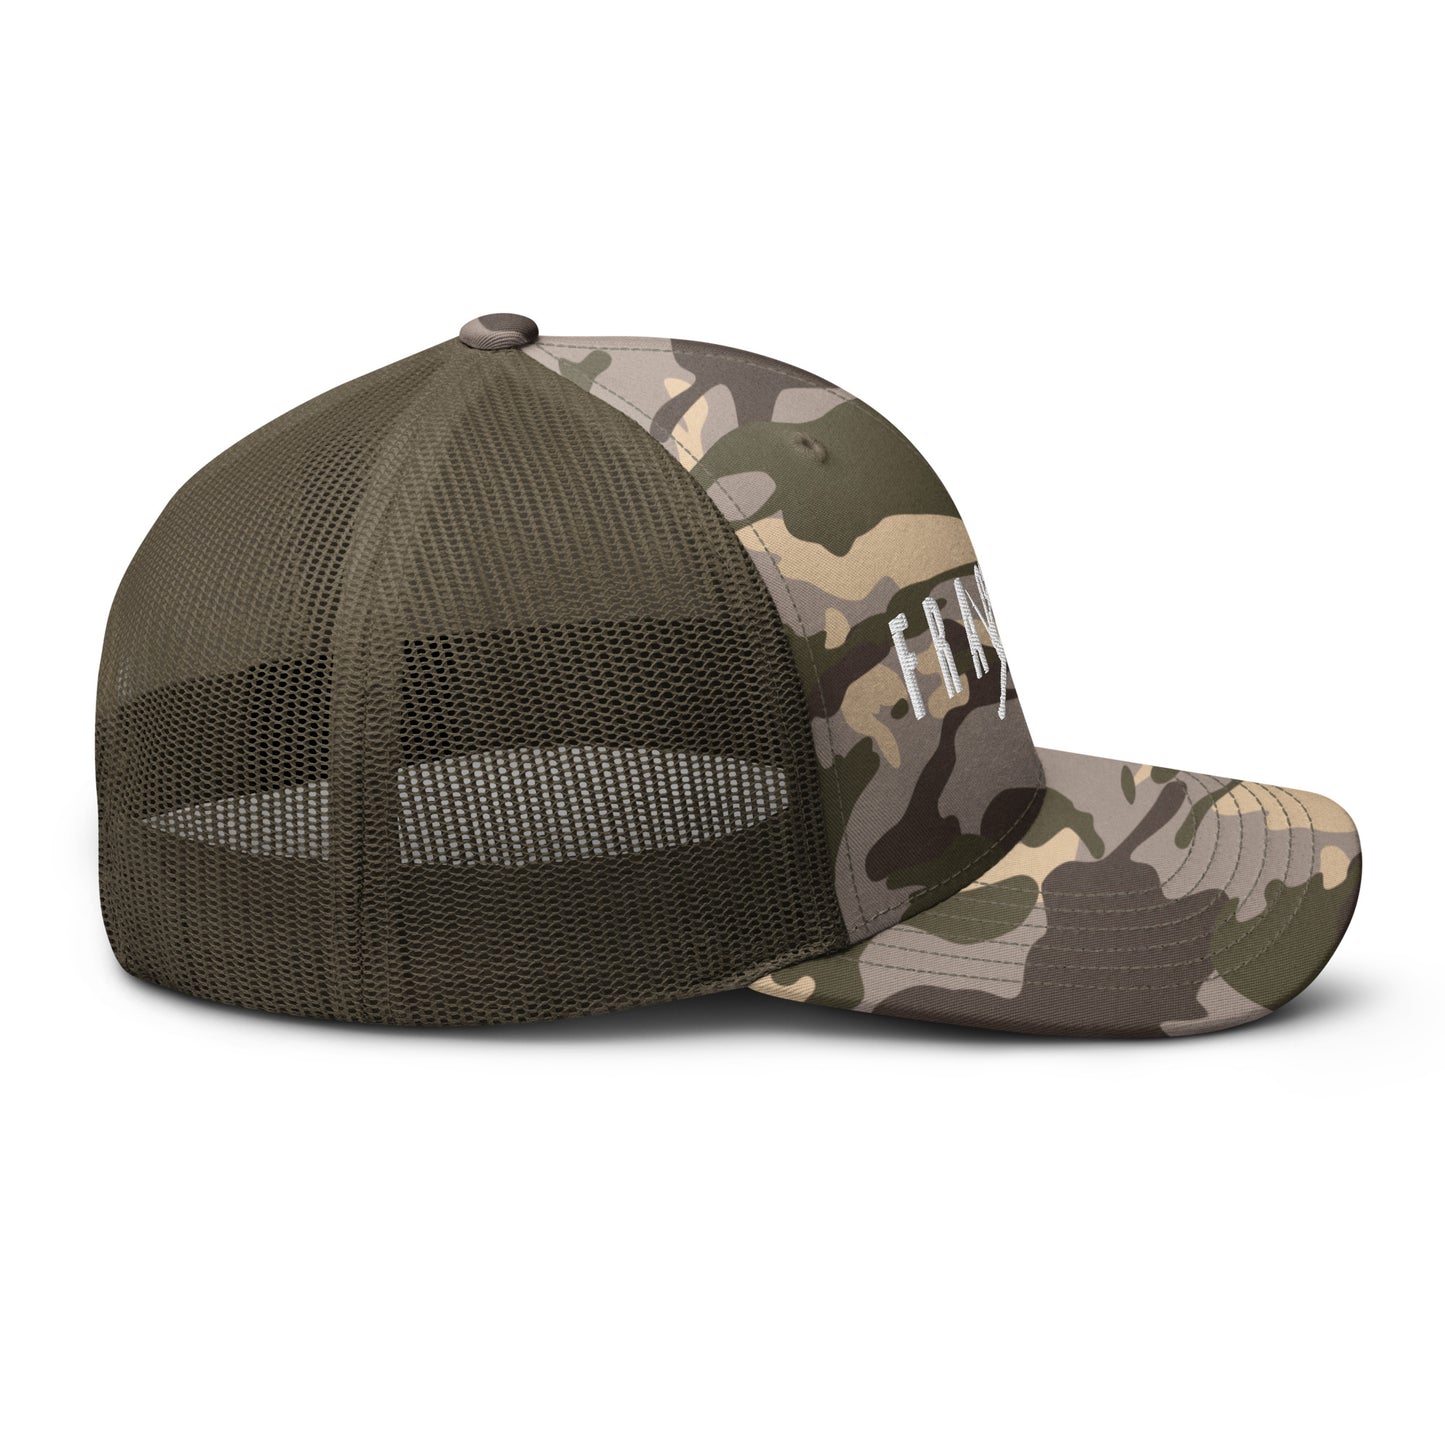 FRAGMAN Camouflage trucker hat